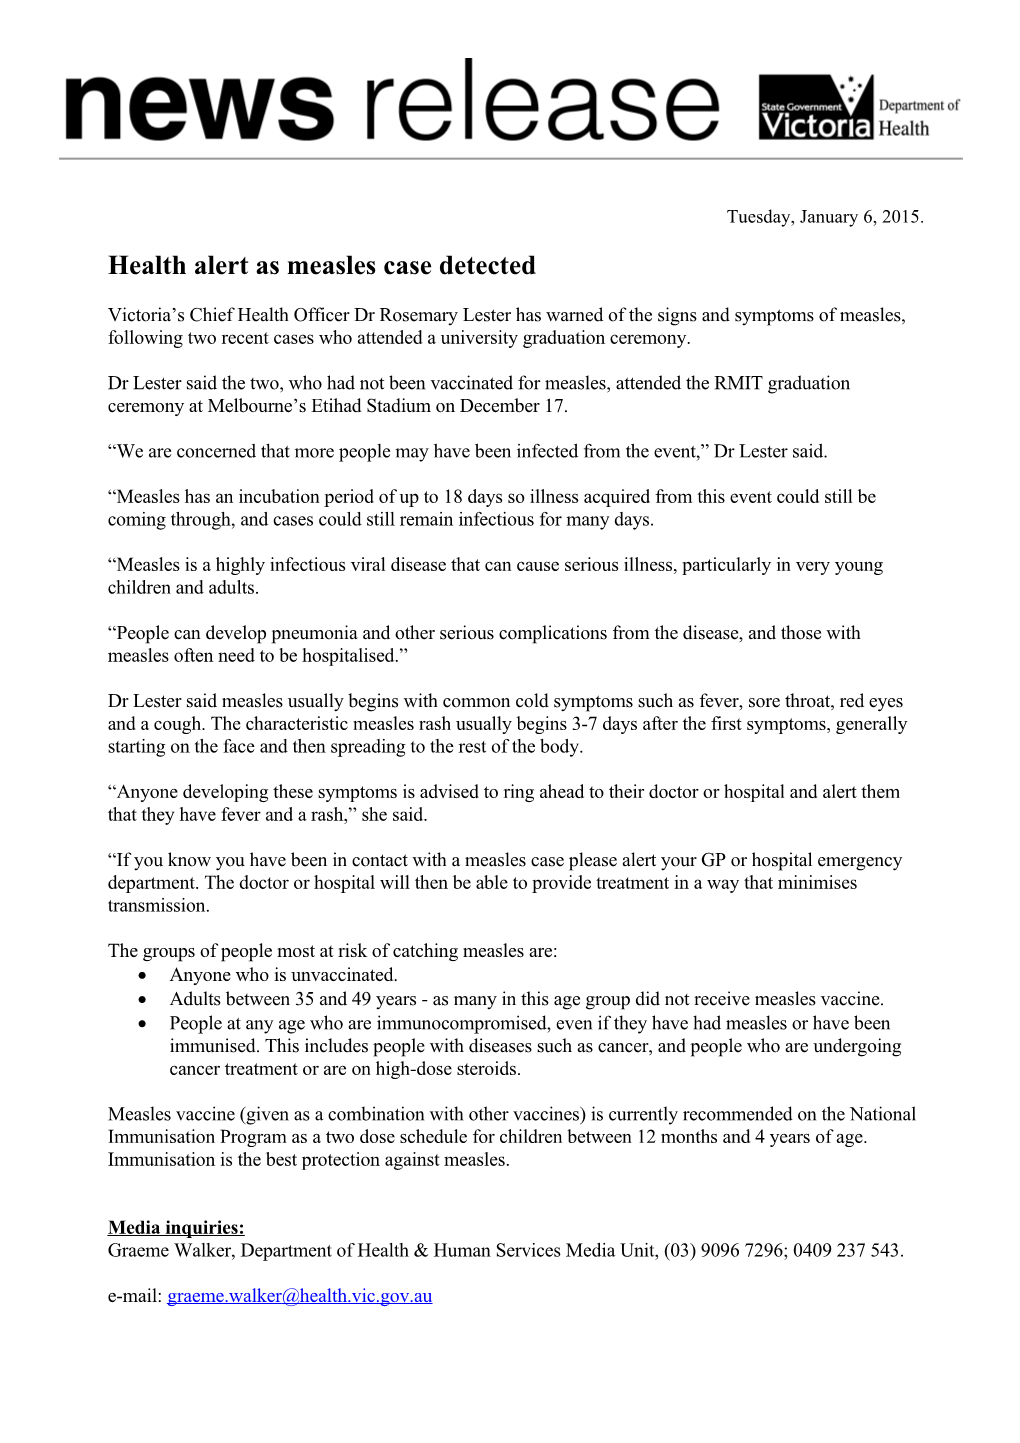 Health Alert As Measles Case Detected